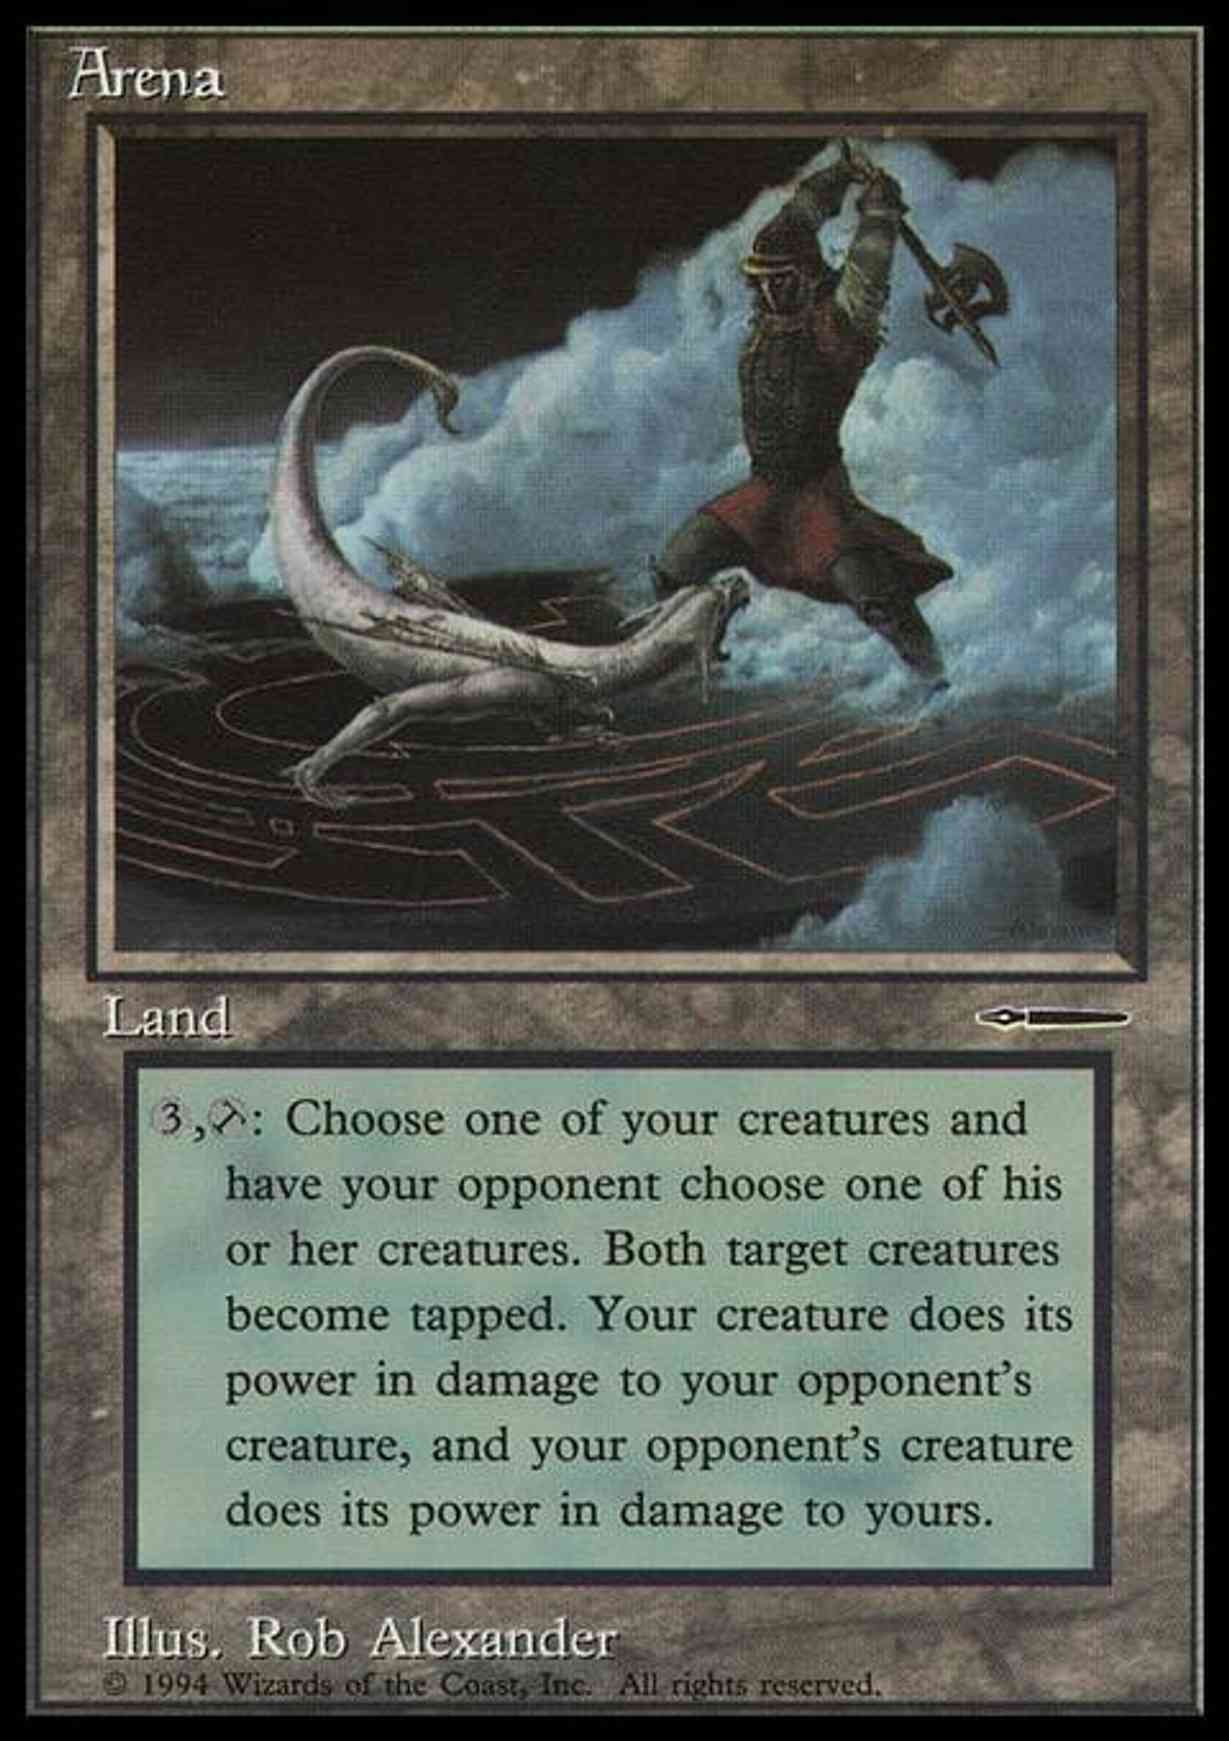 Arena magic card front